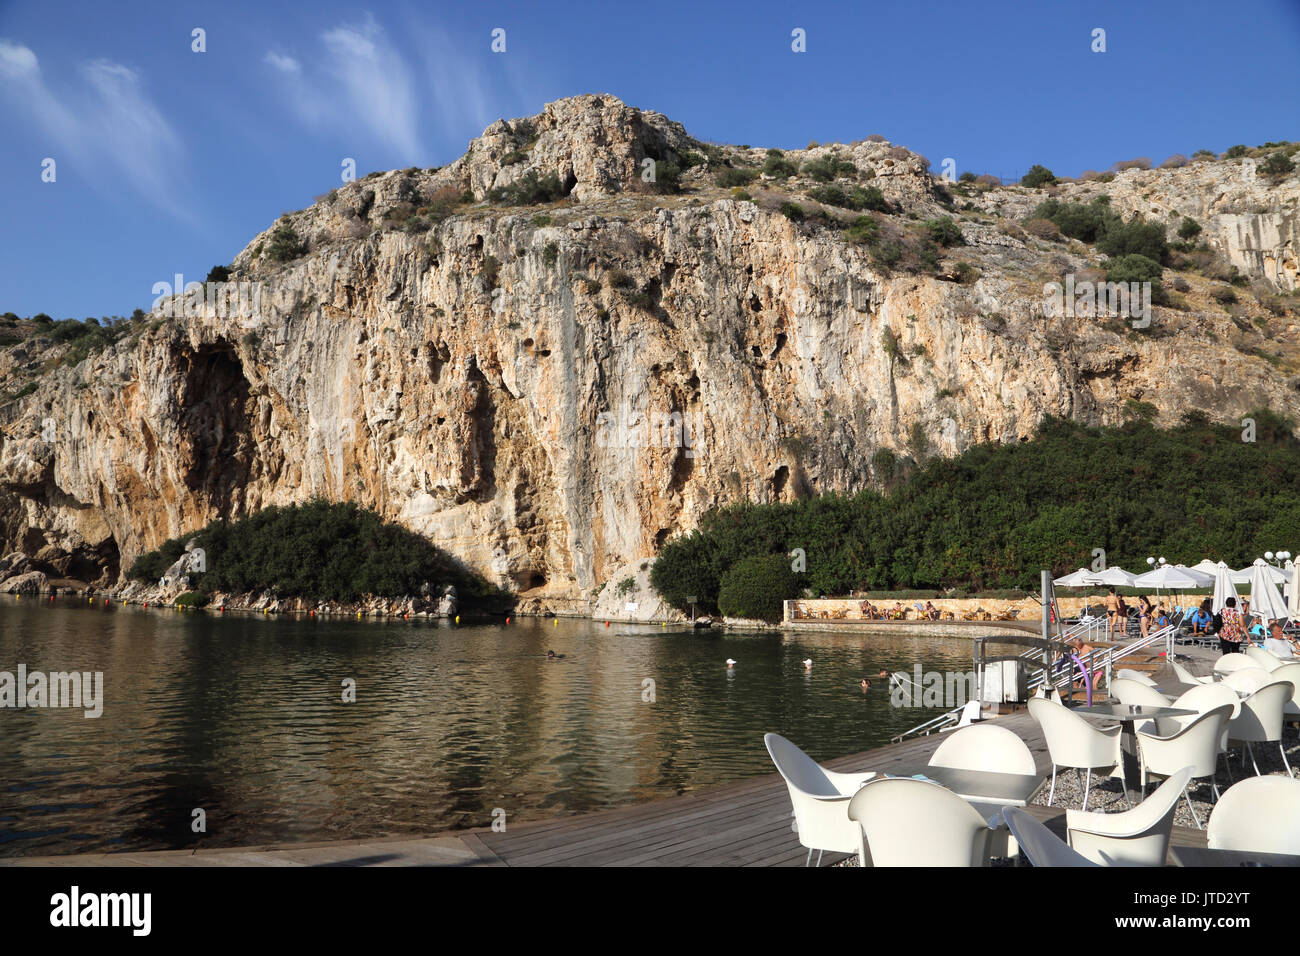 Vouliagmeni Atene Grecia turisti che nuotano nel lago Vouliagmeni una spa naturale - una volta era una caverna ma il tetto della grotta è caduto a causa dell'erosione del Foto Stock